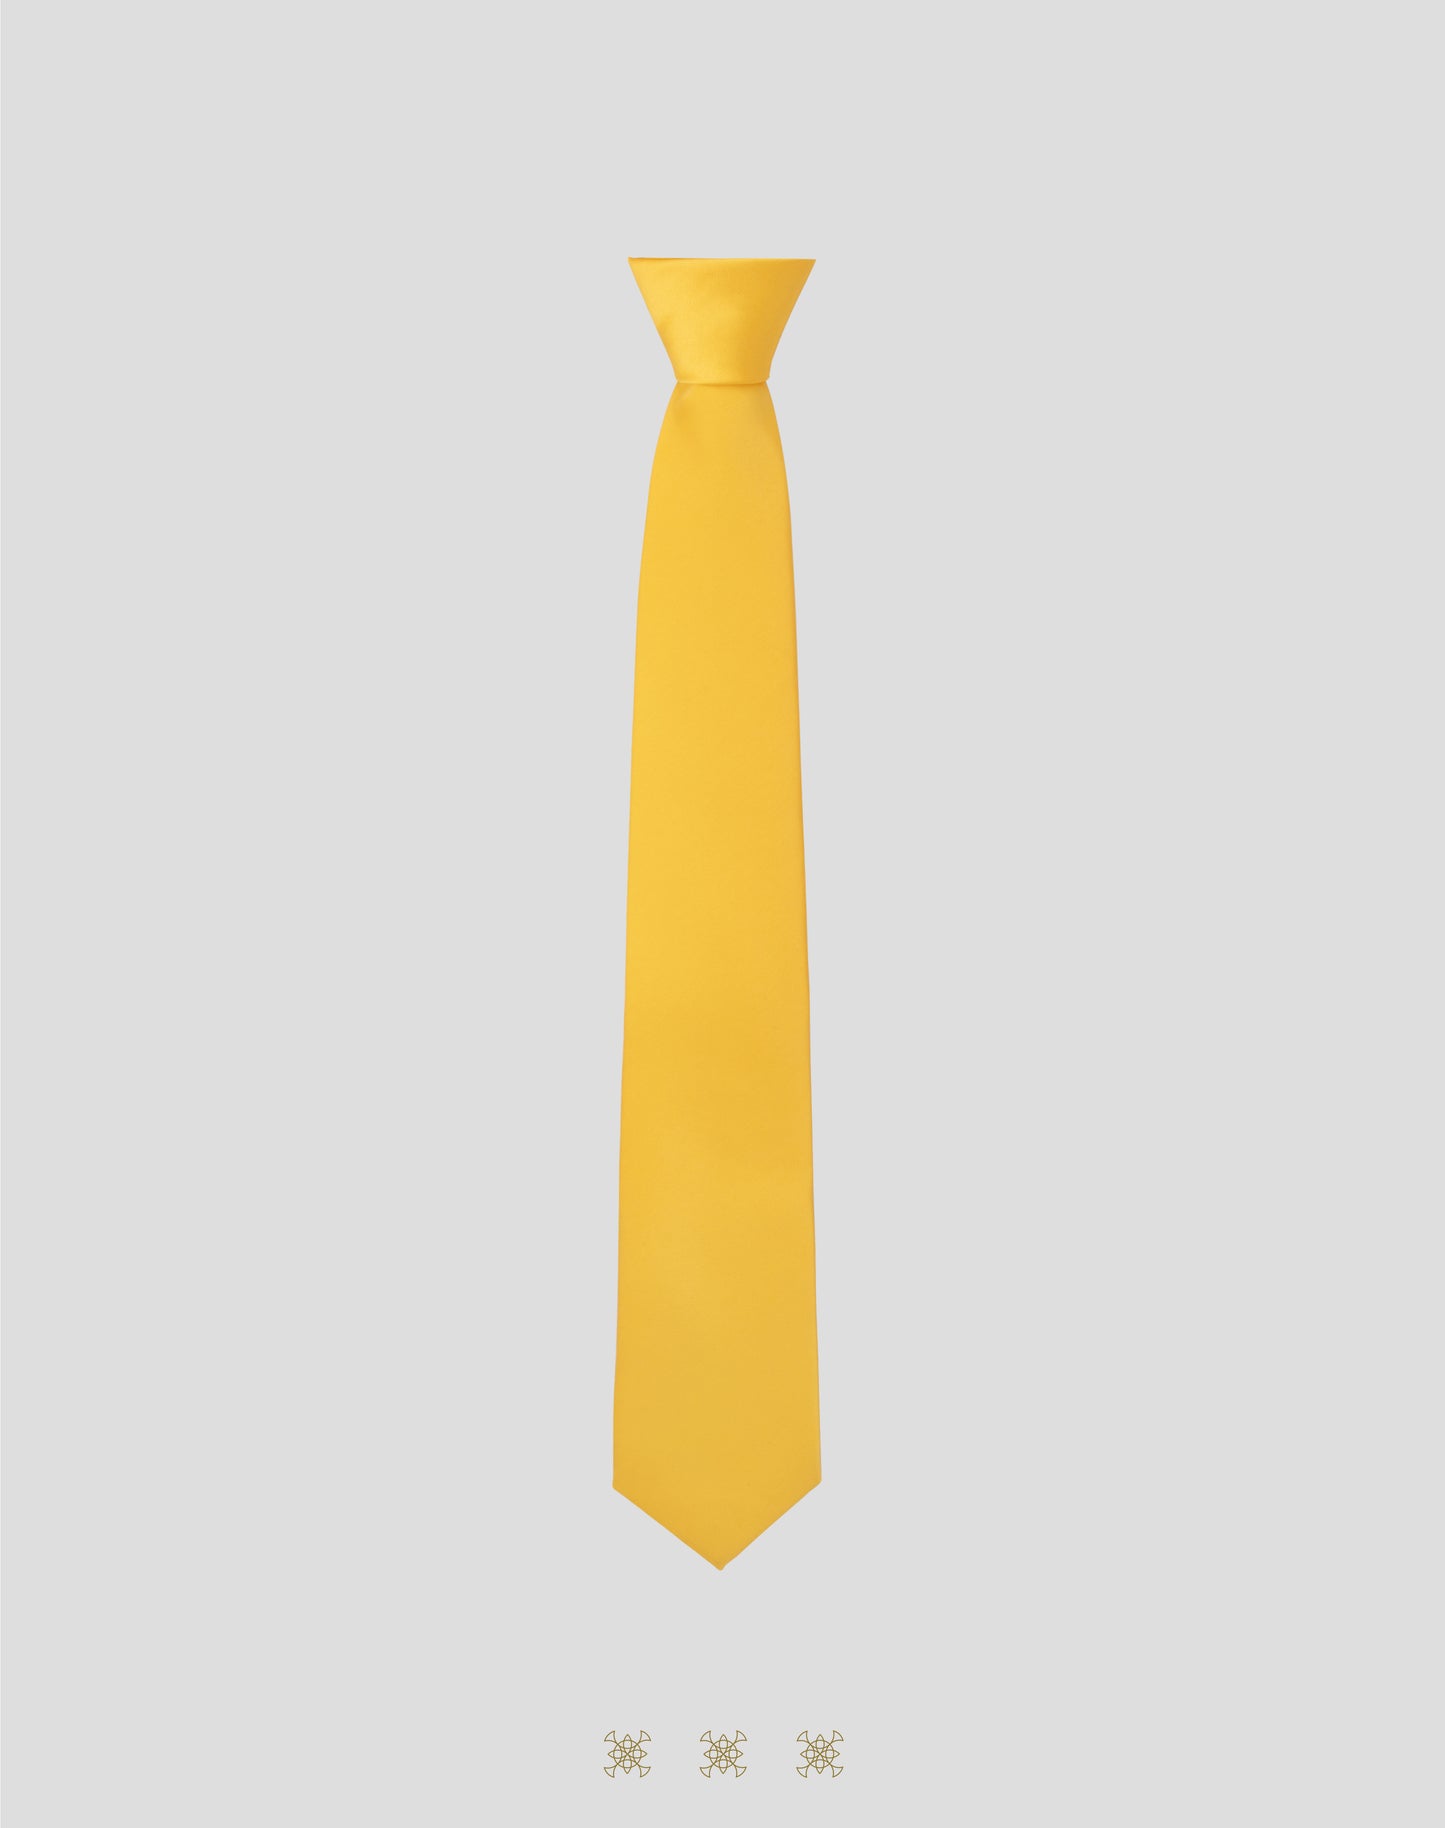 Corbata amarilla con nudo 40-006